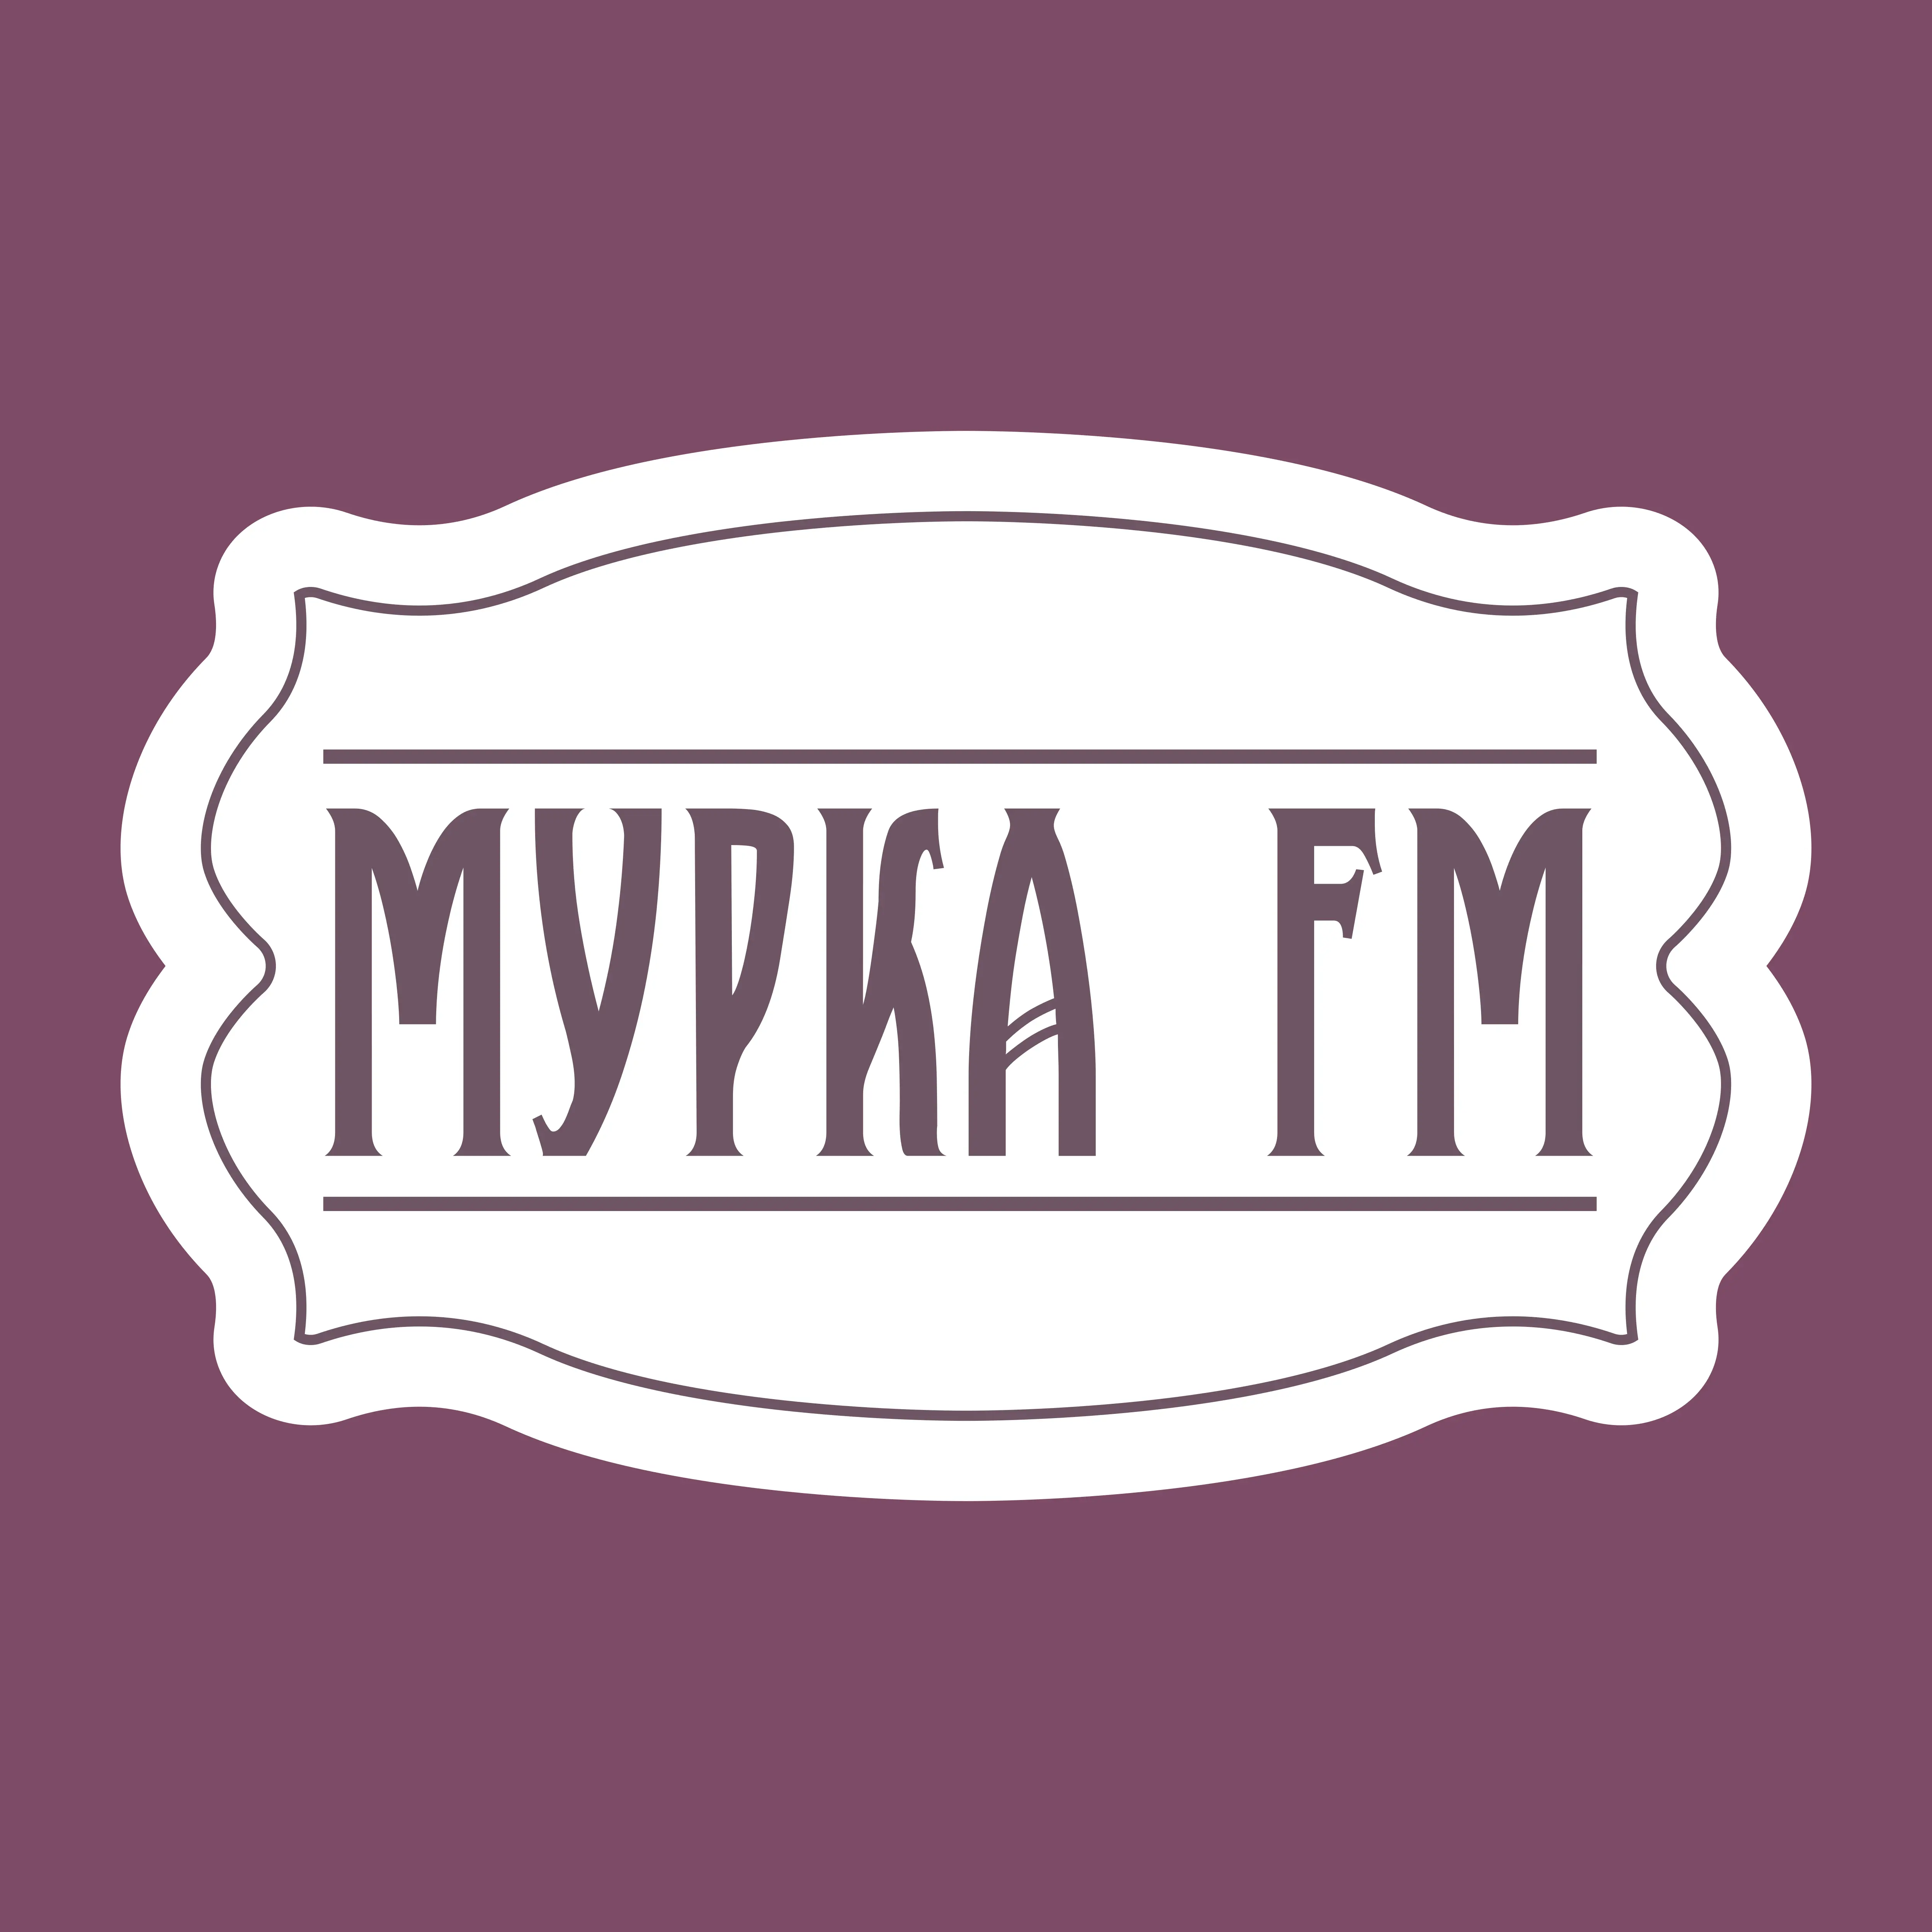 Мурка FM